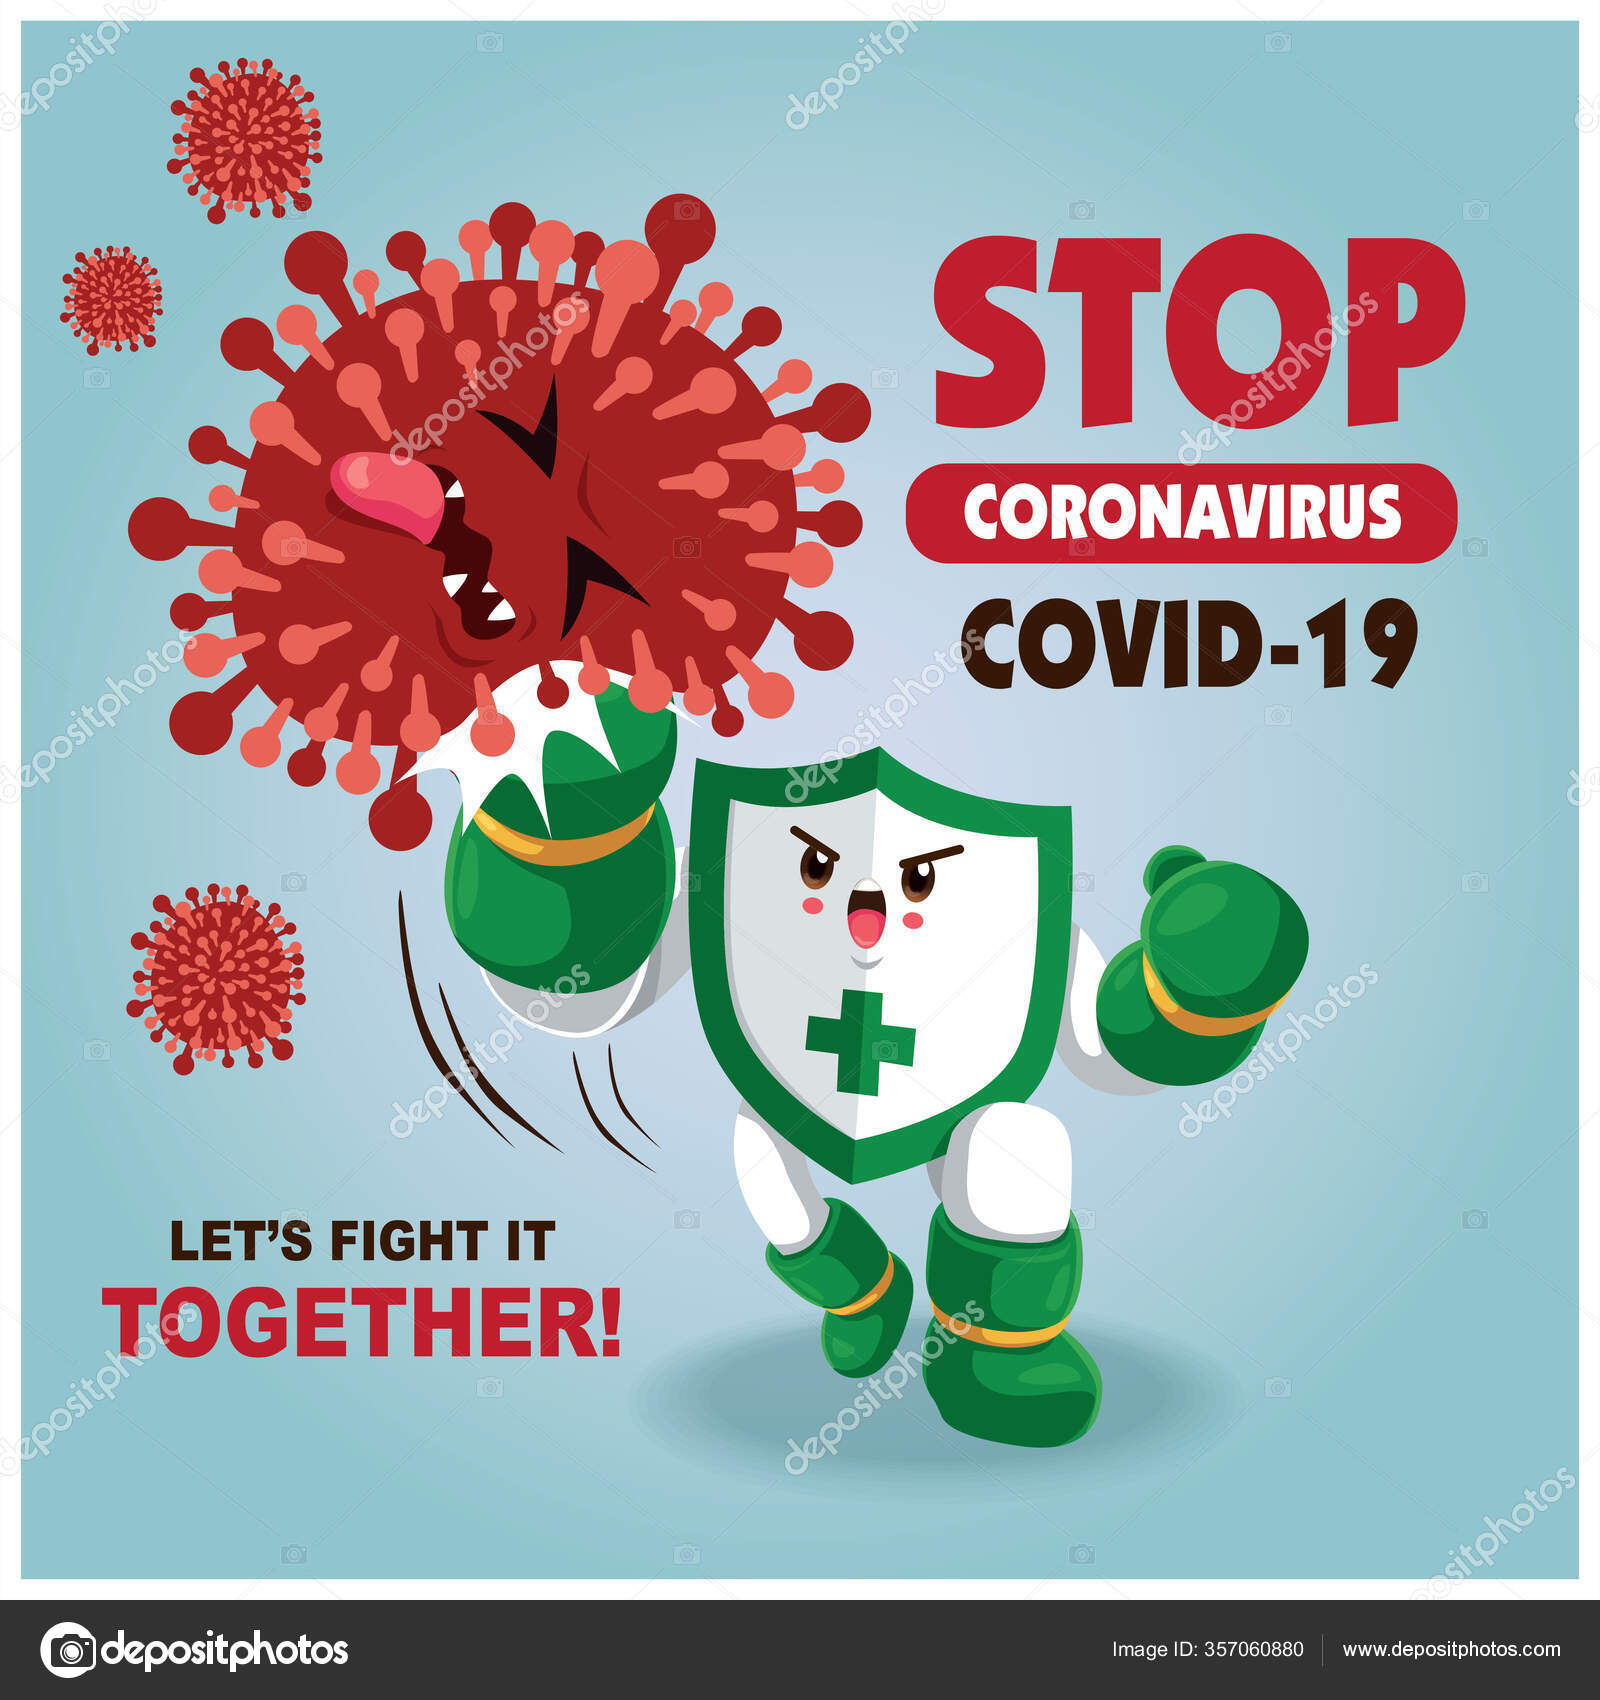 Personagens de Cells at Work! lutam contra o coronavírus (COVID-19)